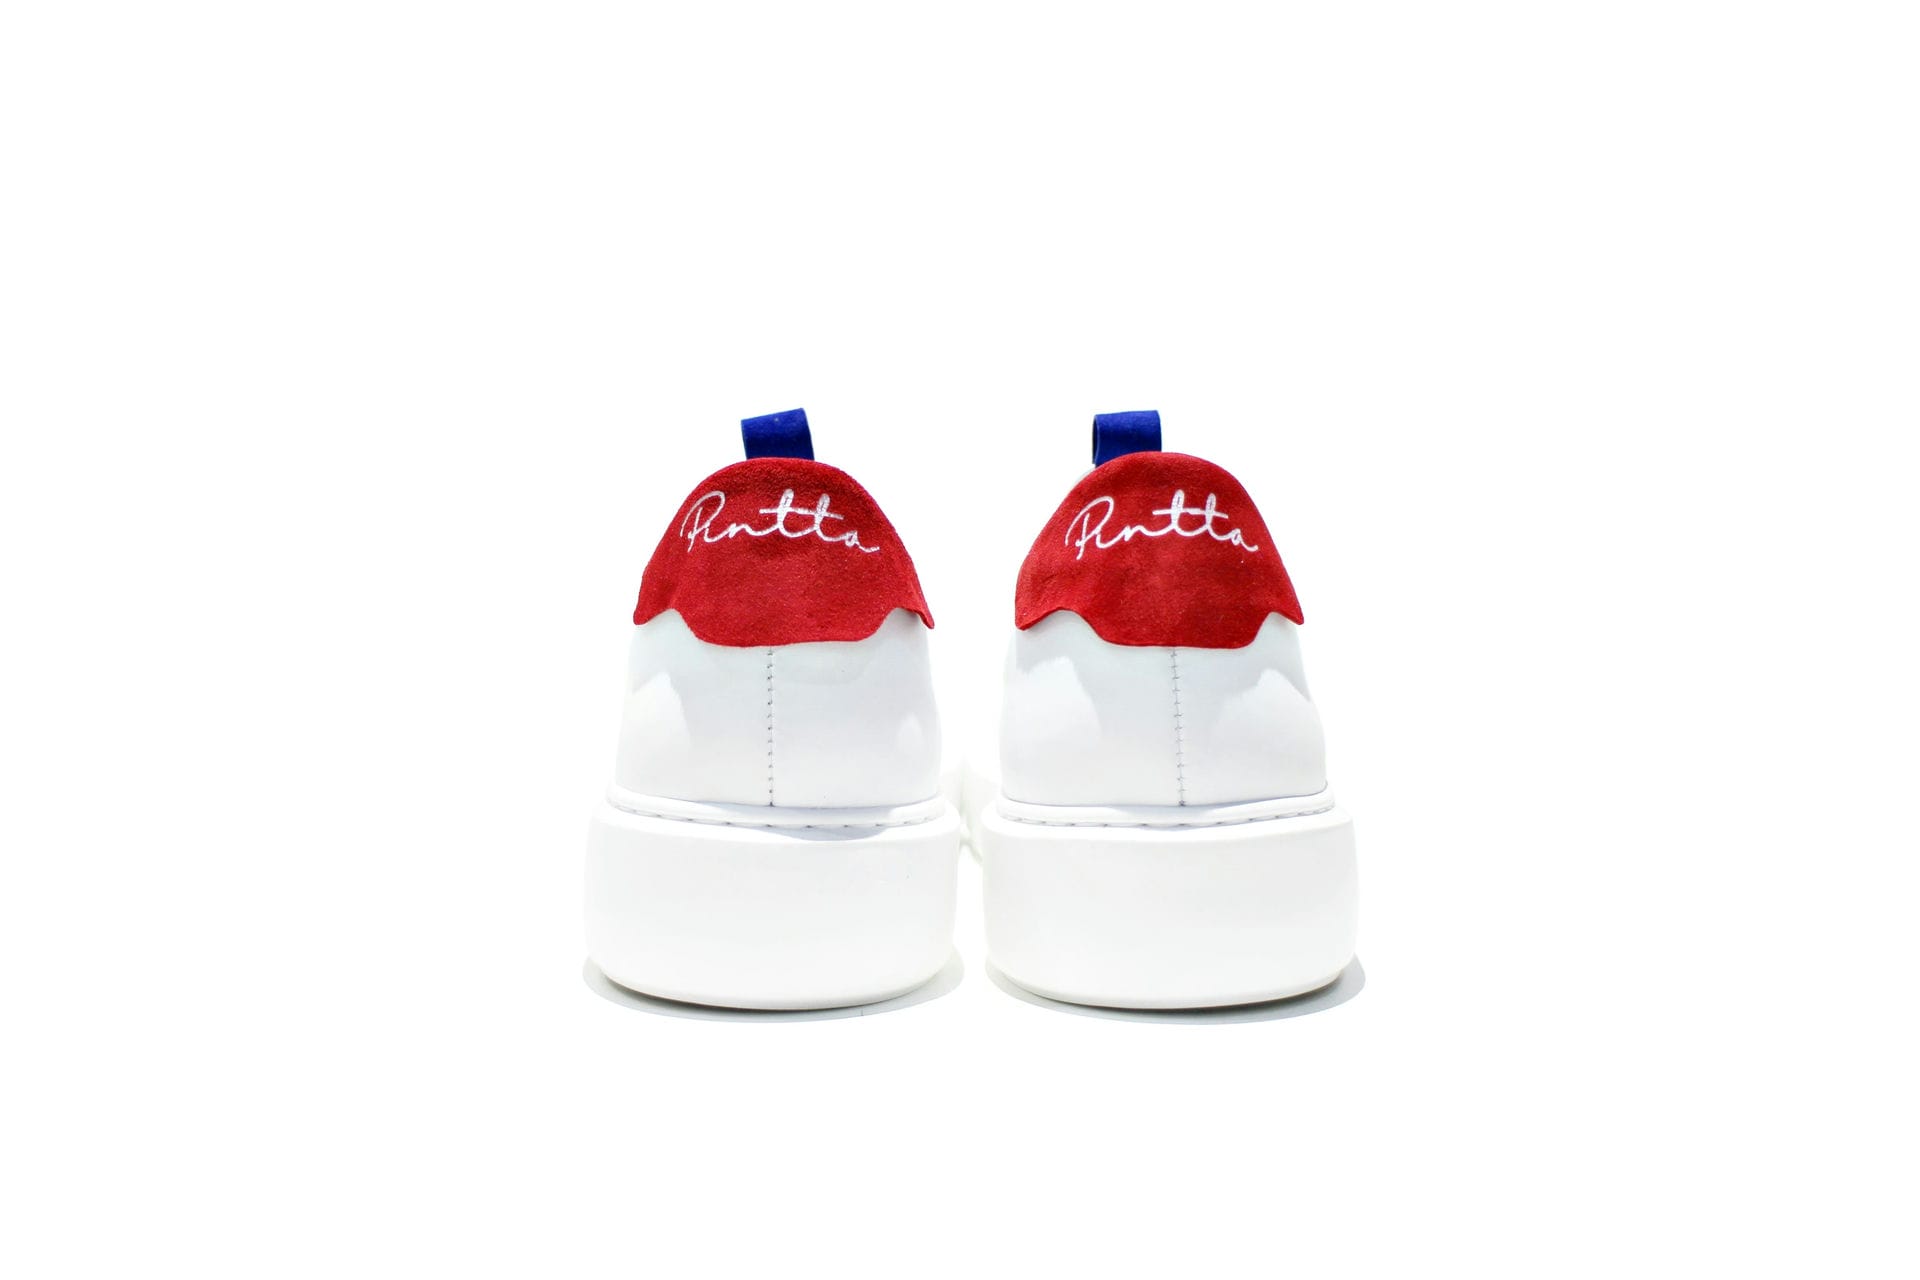 Warmte Toneelschrijver duidelijkheid Paris Red – - Pintta Shoes